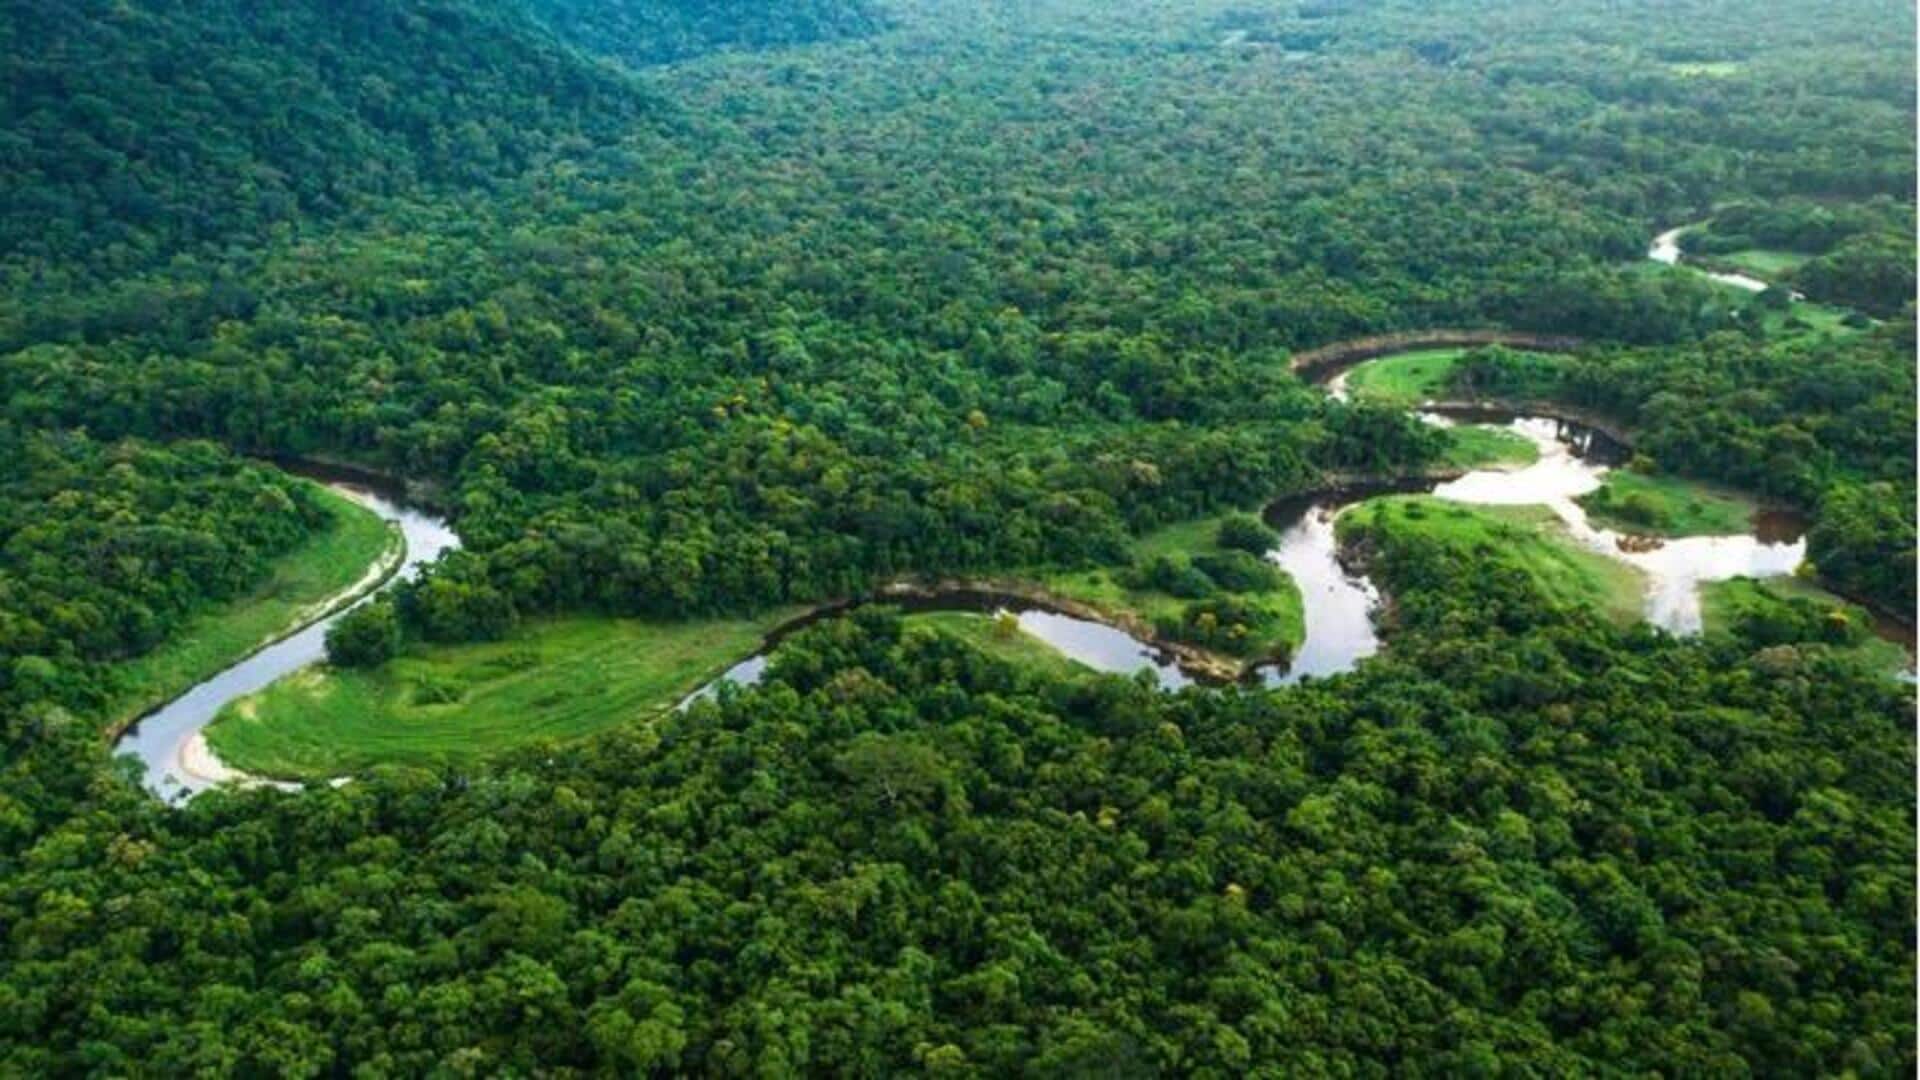 Mulailah ekspedisi Hutan Hujan Amazon bersama saudara Anda